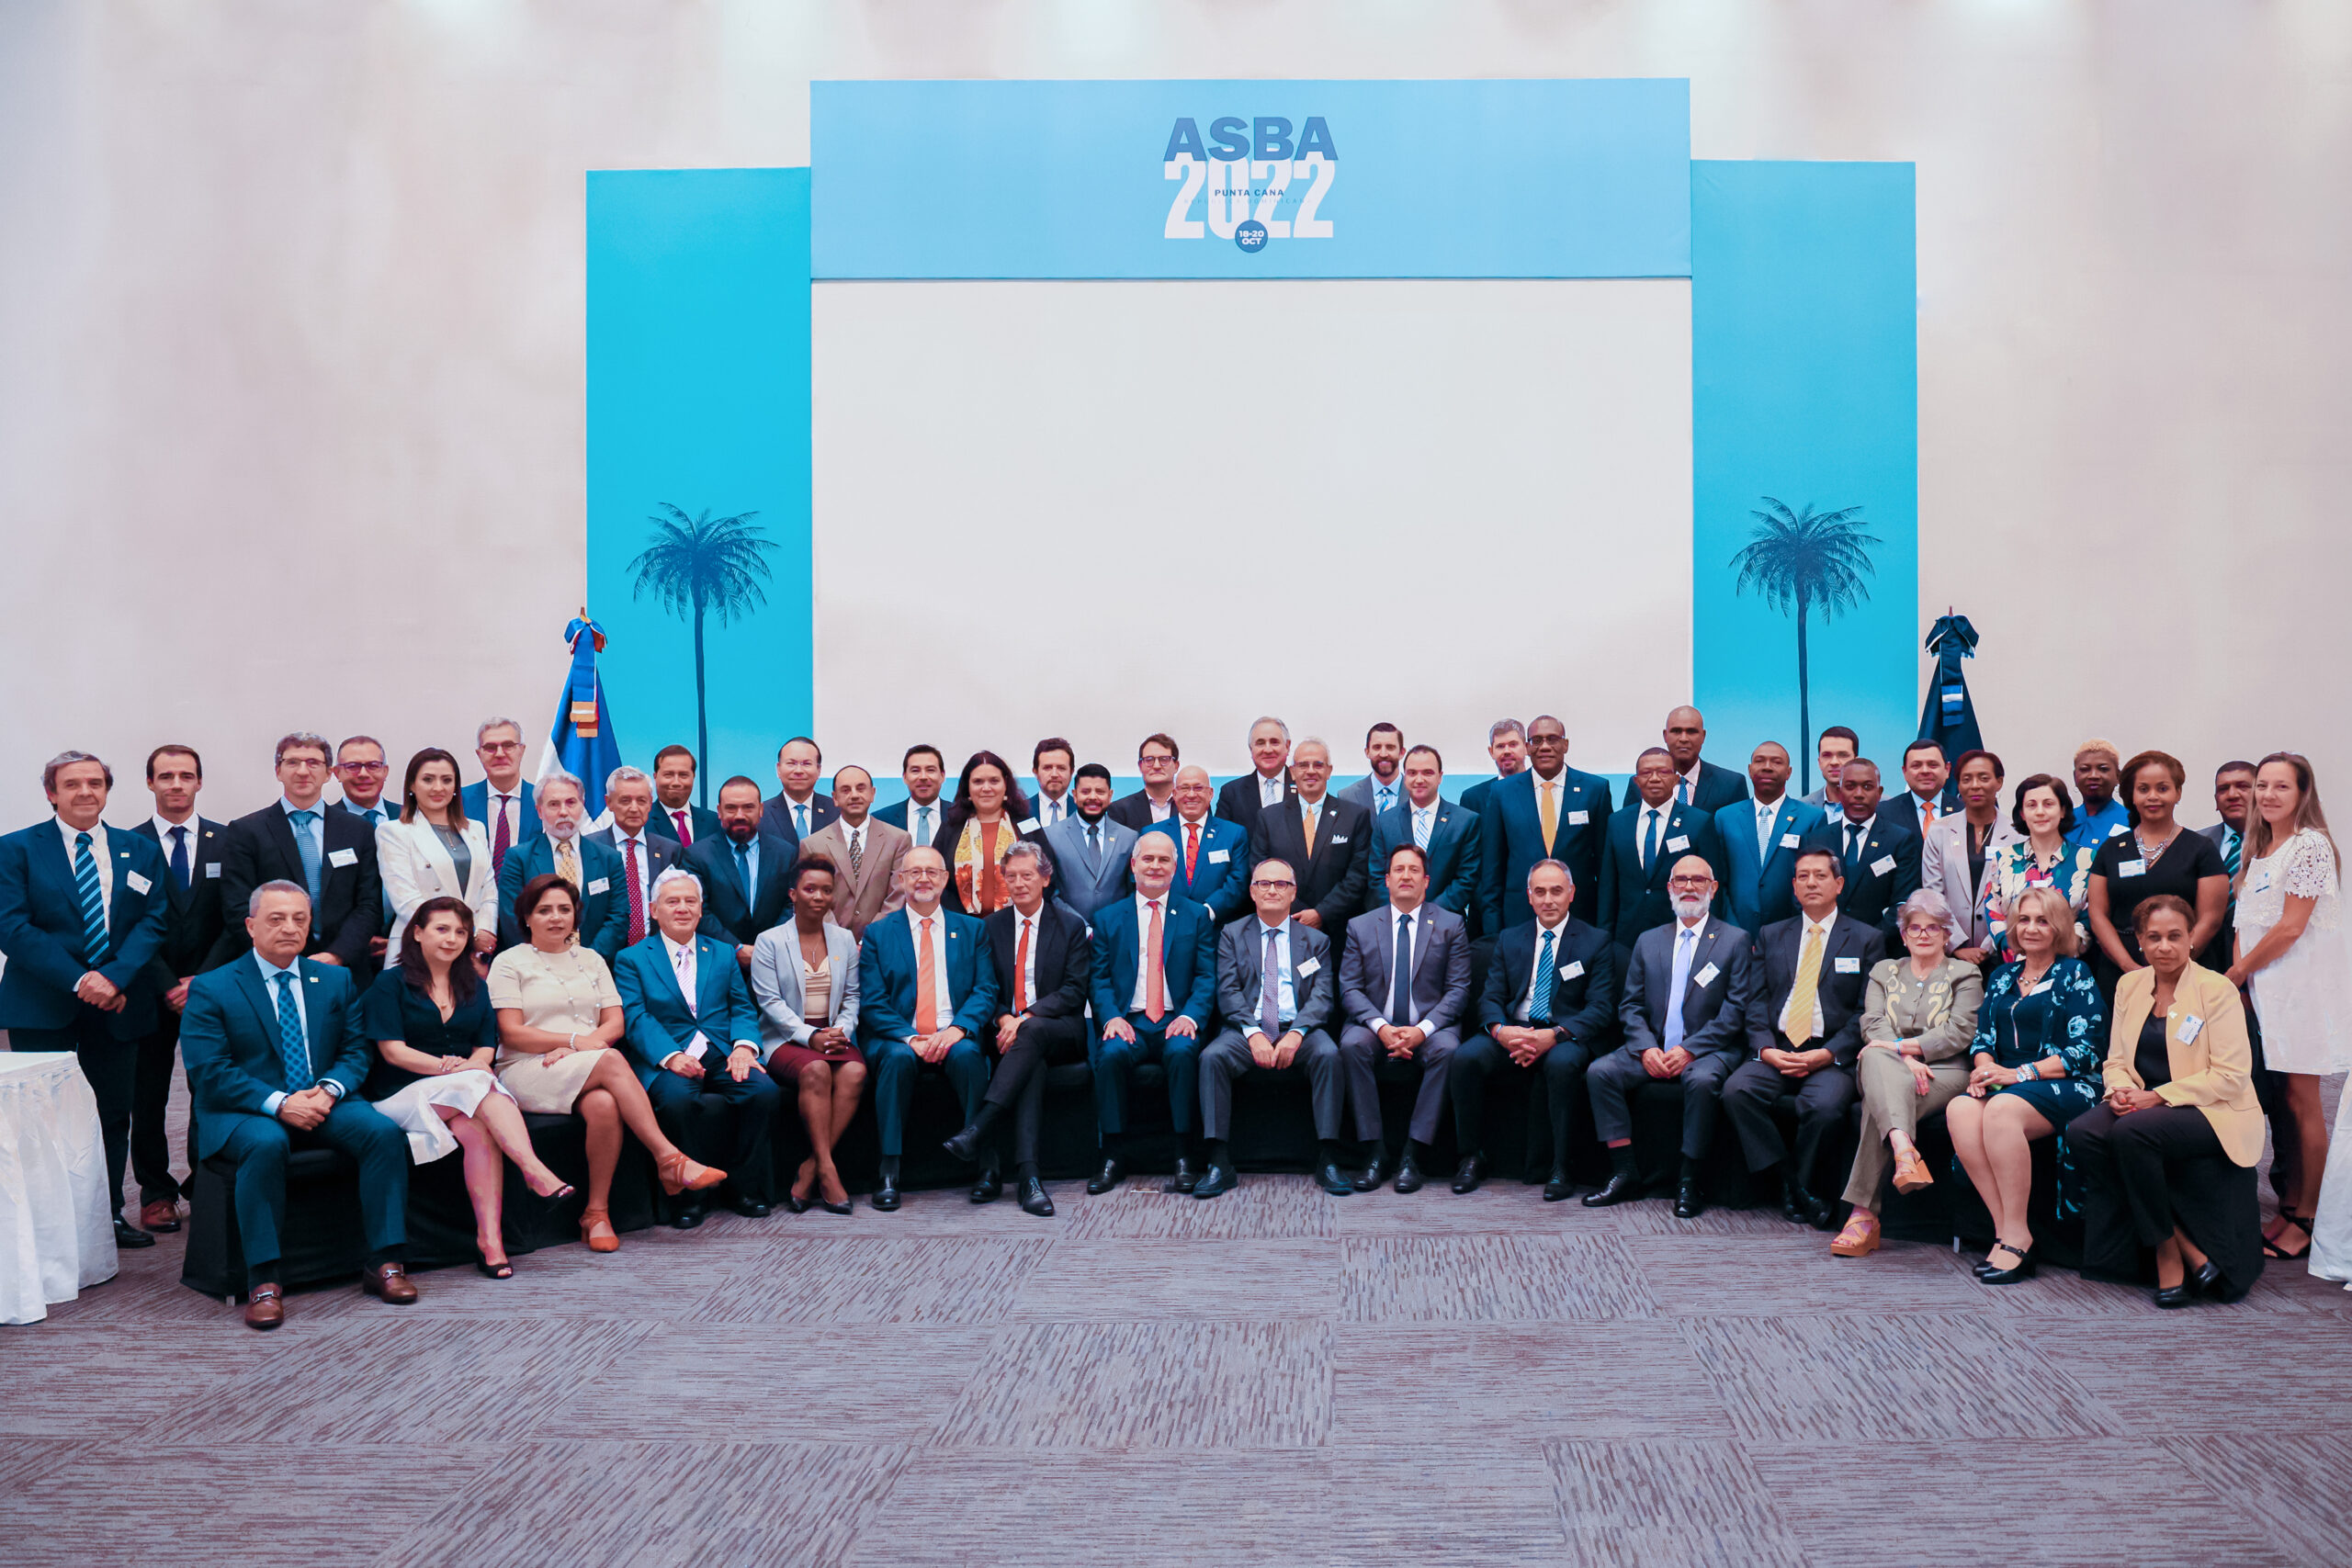 Asociación de Supervisores Bancarios de las Américas (ASBA) celebra su vigésimo quinta asamblea anual en Punta Cana